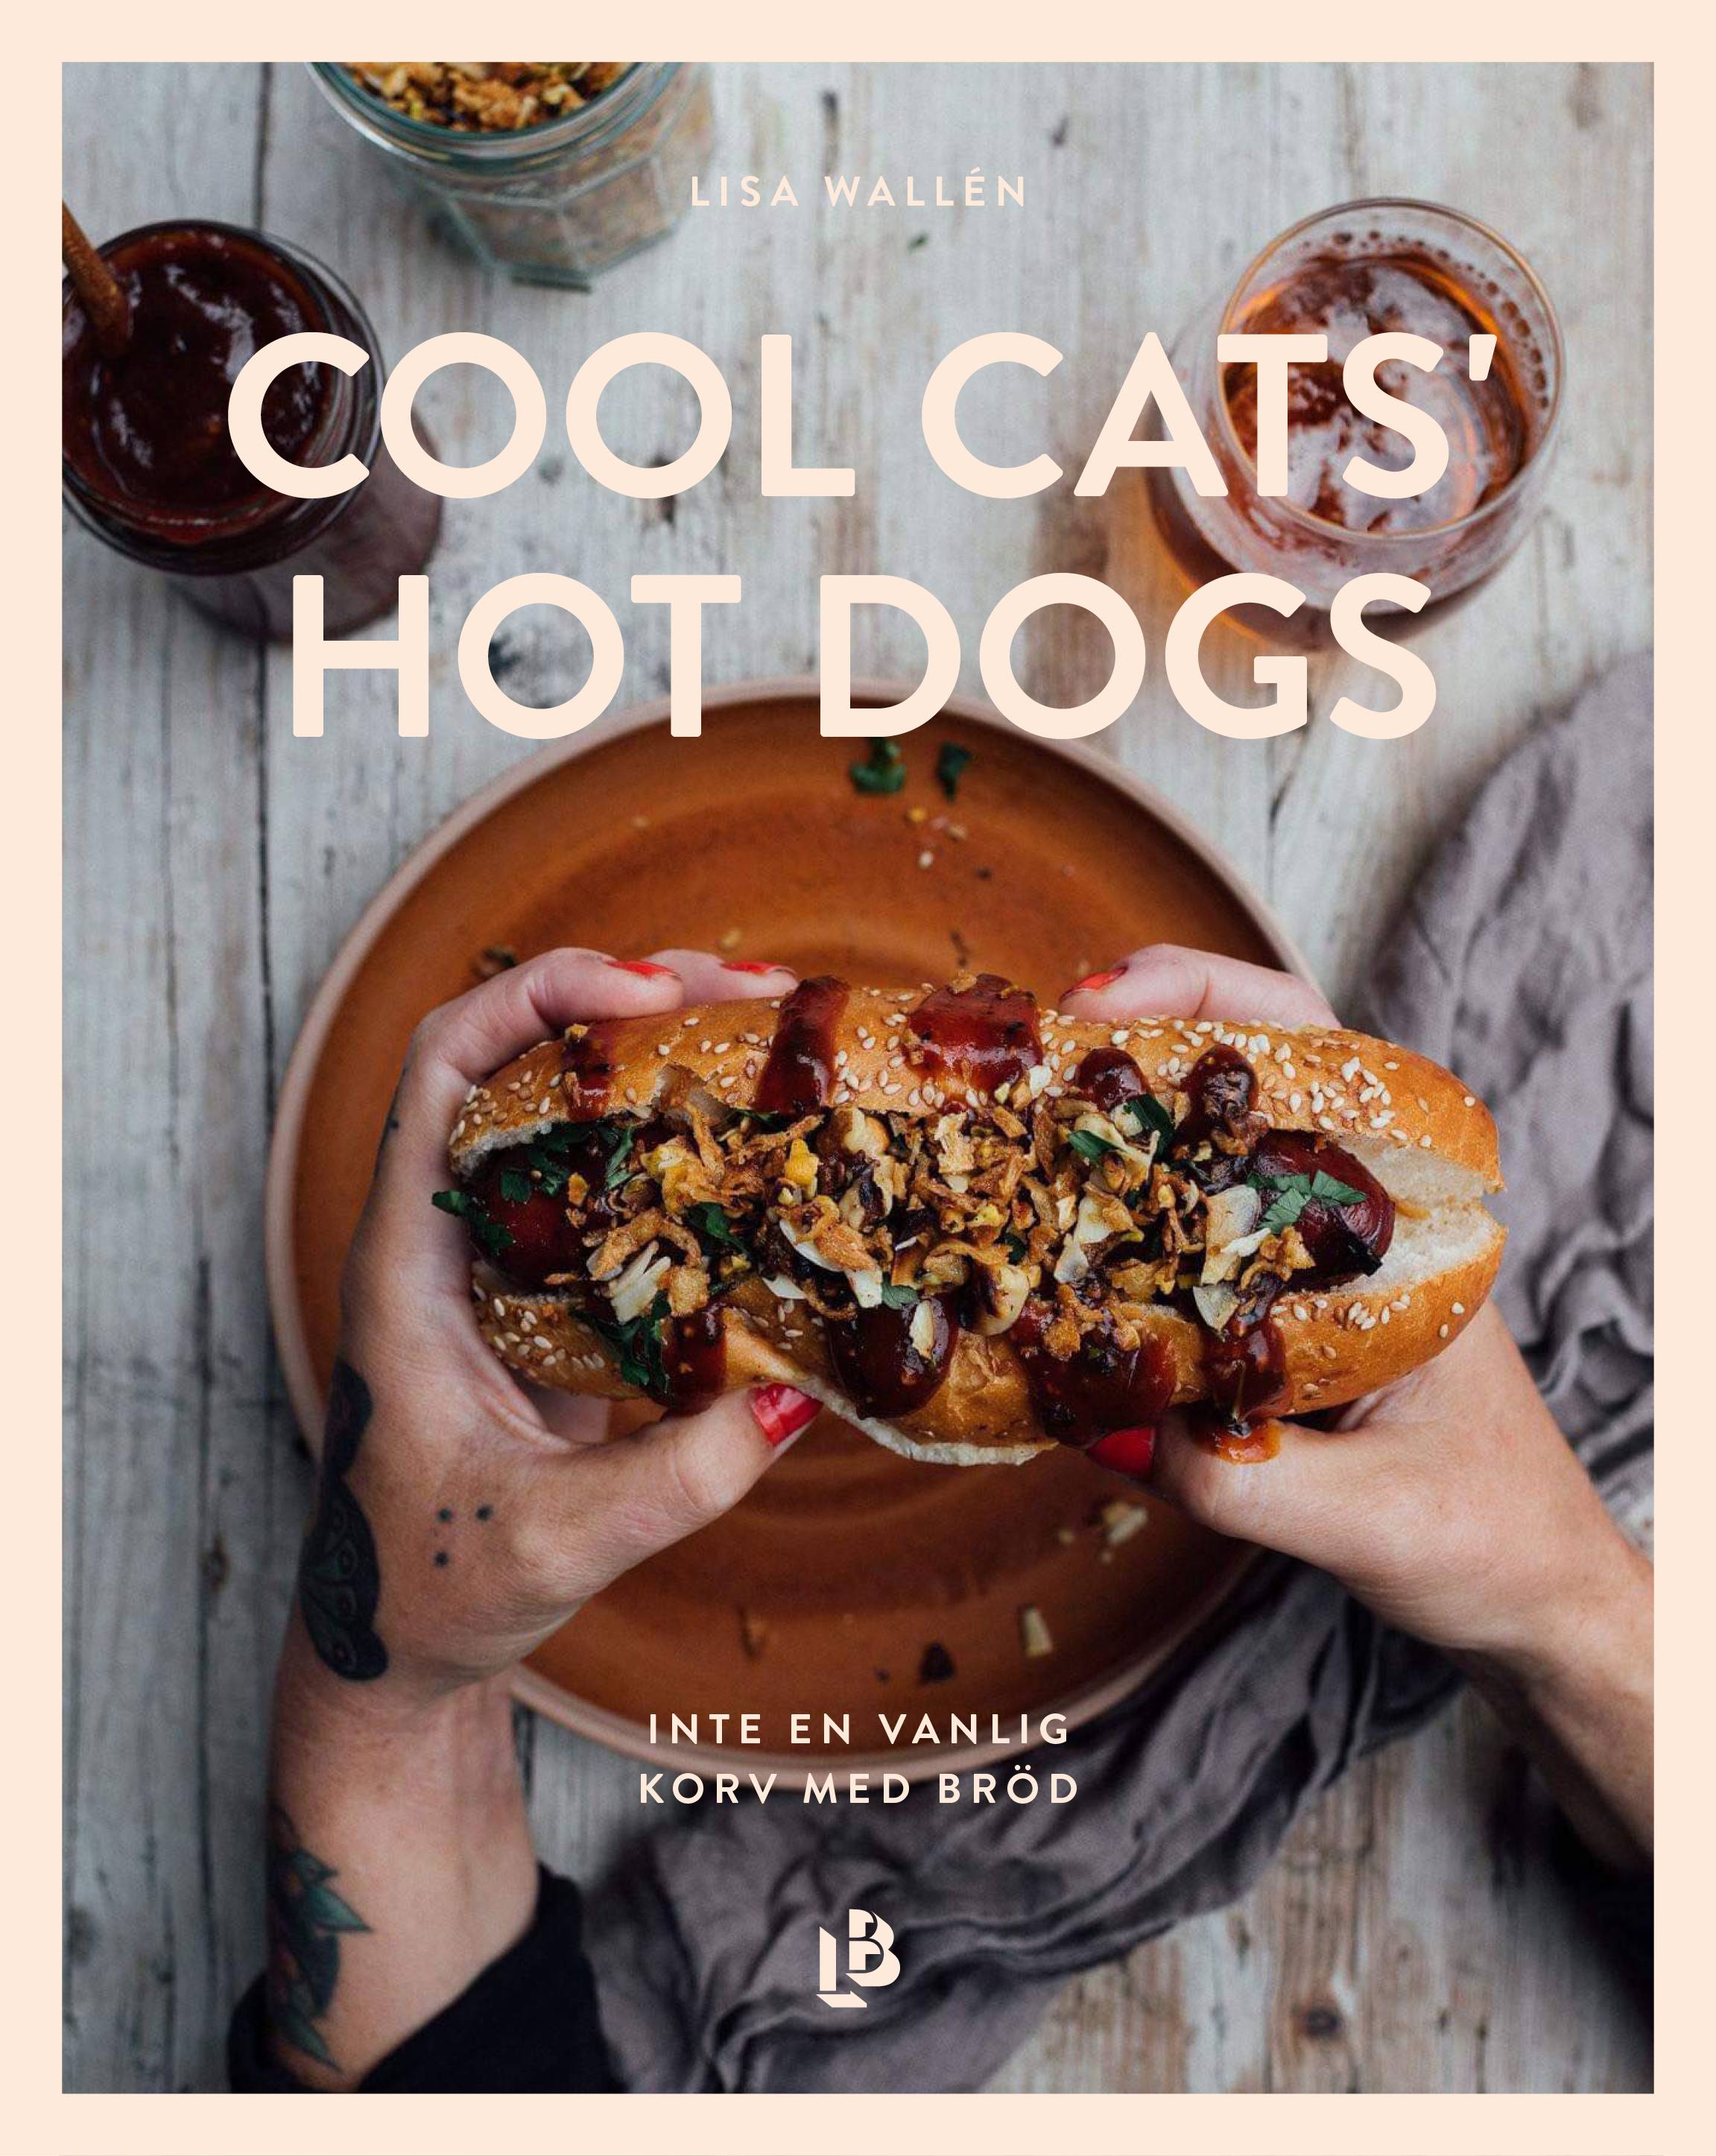 Cool Cats' Hot Dogs - inte en vanlig korv med bröd